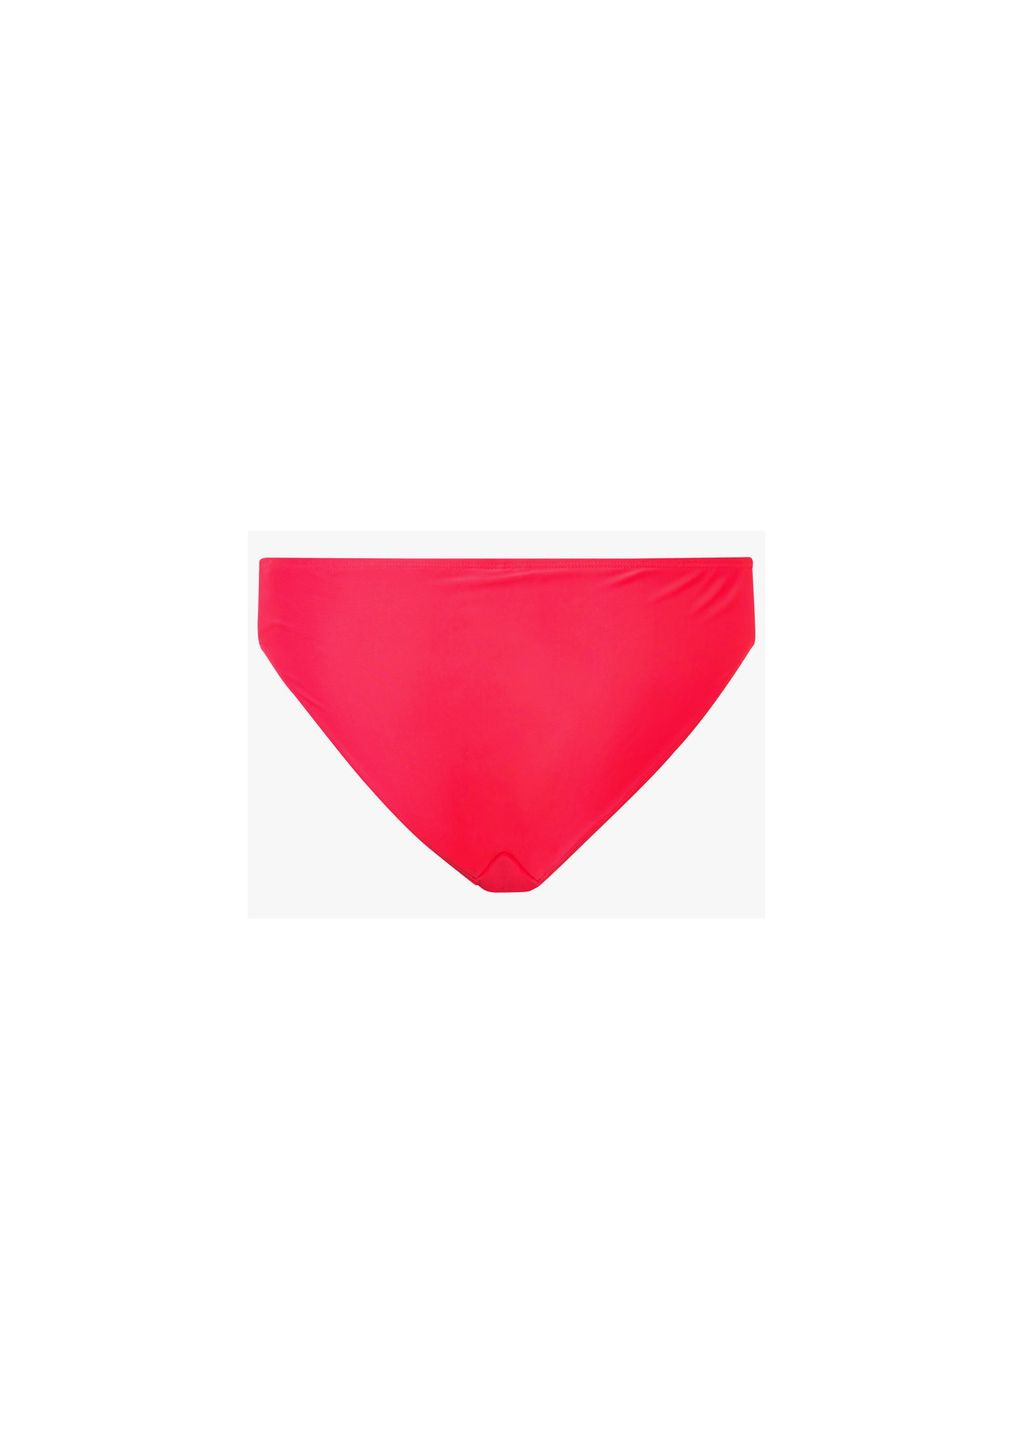 Комбинированный купальник раздельный на подкладке для женщины lycra® 372167-1 бикини Esmara С открытой спиной, С открытыми плечами